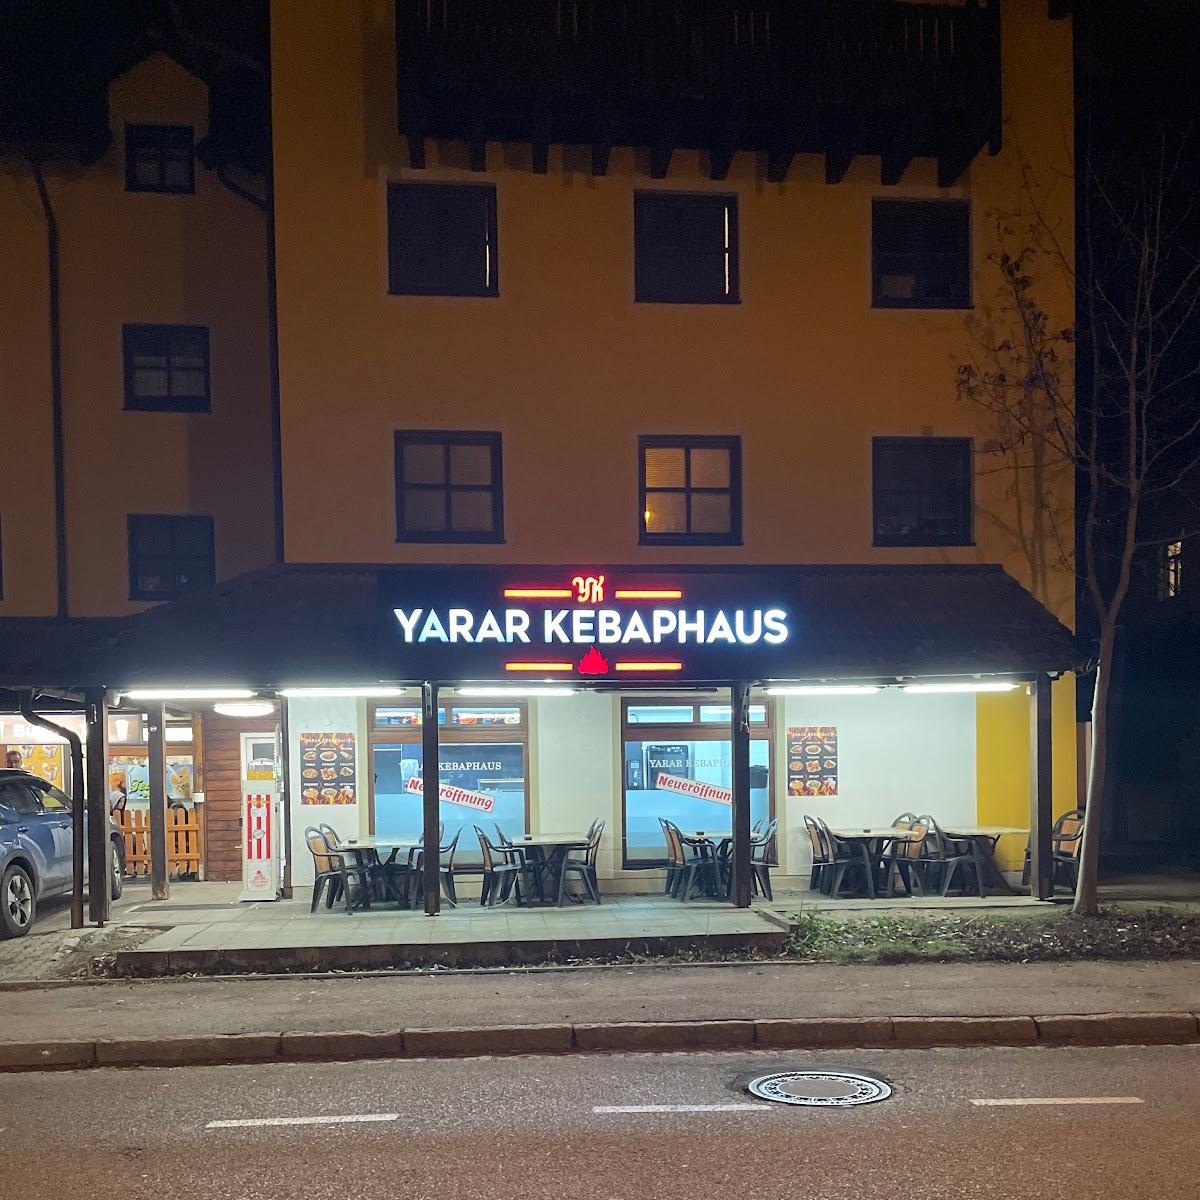 Restaurant "YARAR KEBAPHAUS HOLZKIRCHEN" in Holzkirchen